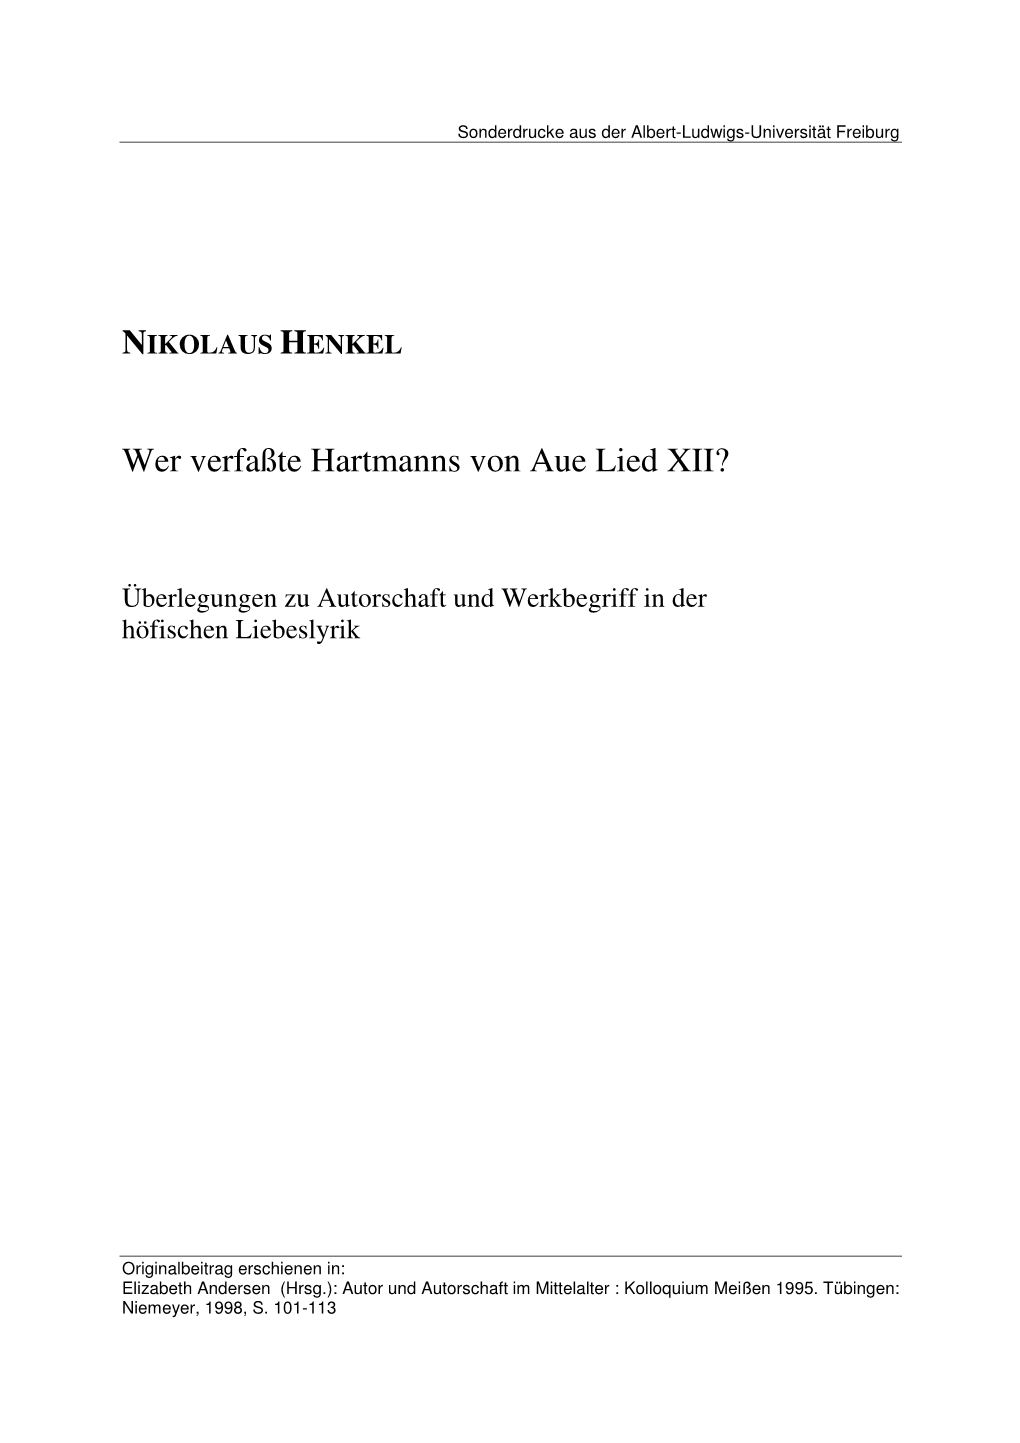 Wer Verfaßte Hartmanns Von Aue Lied XII?